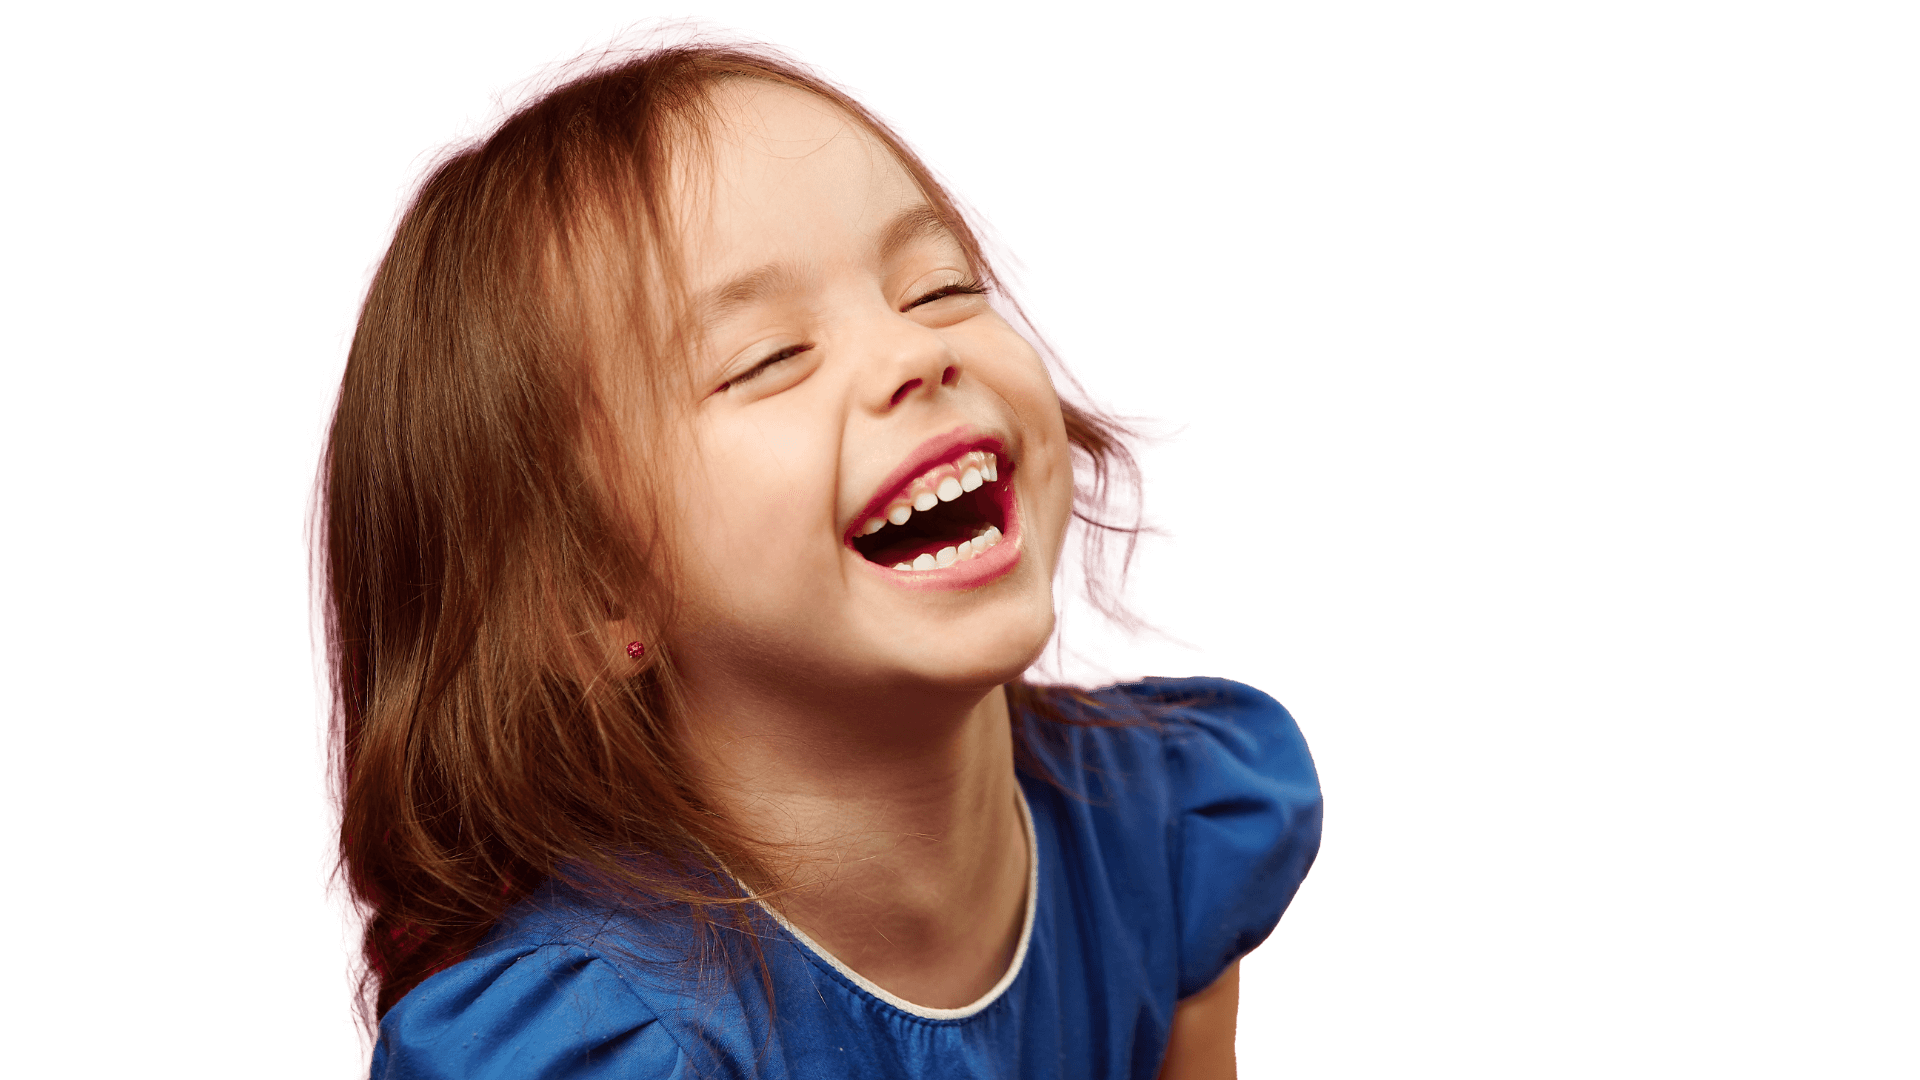 Ein Kind lacht in die Kamera und sein Mund formt dabei das "O" in WoW